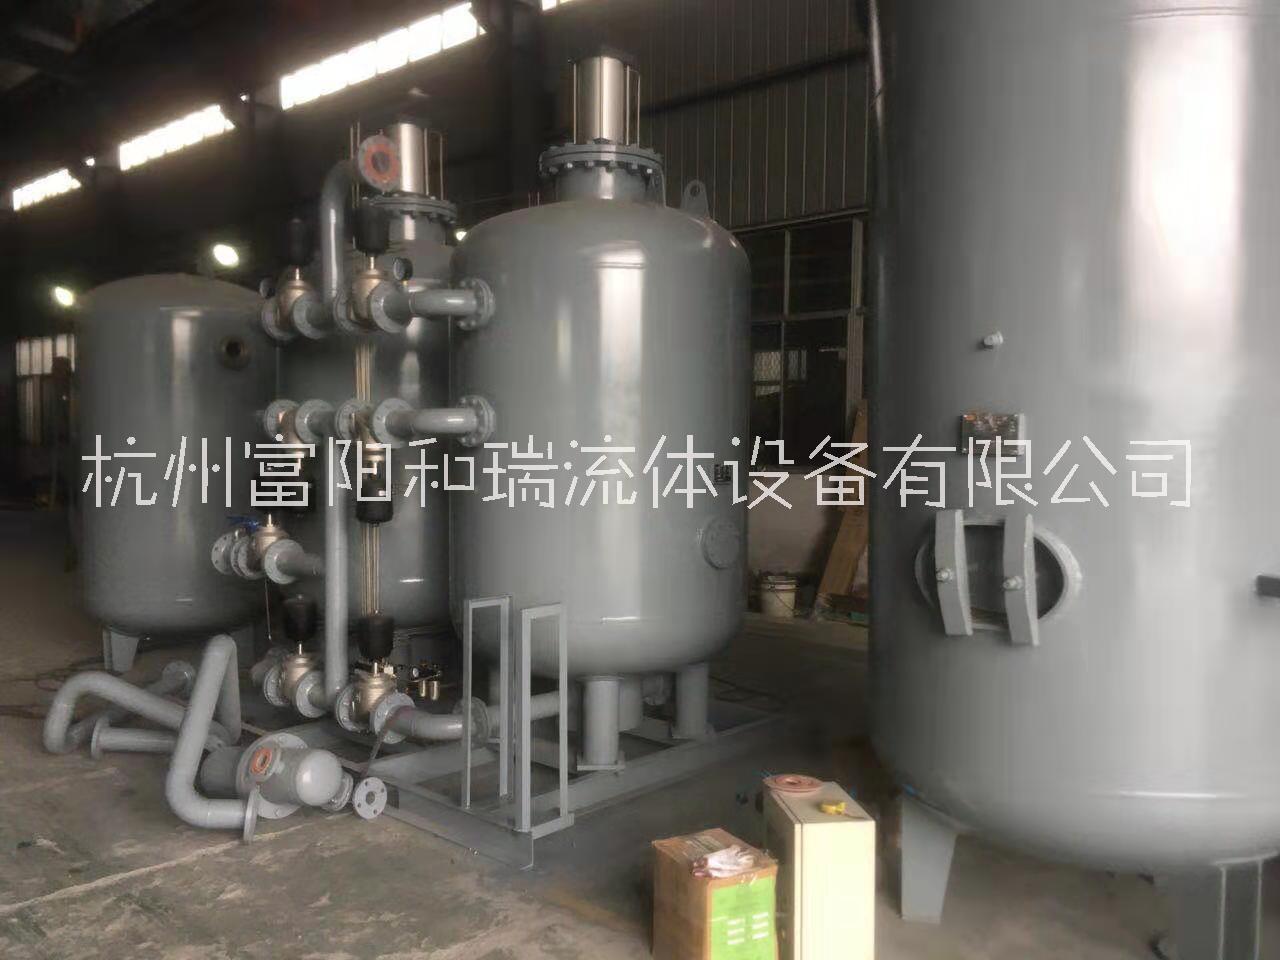 杭州5立方psa制氮机厂家、供应商、报价【杭州富阳和瑞流体设备有限公司】